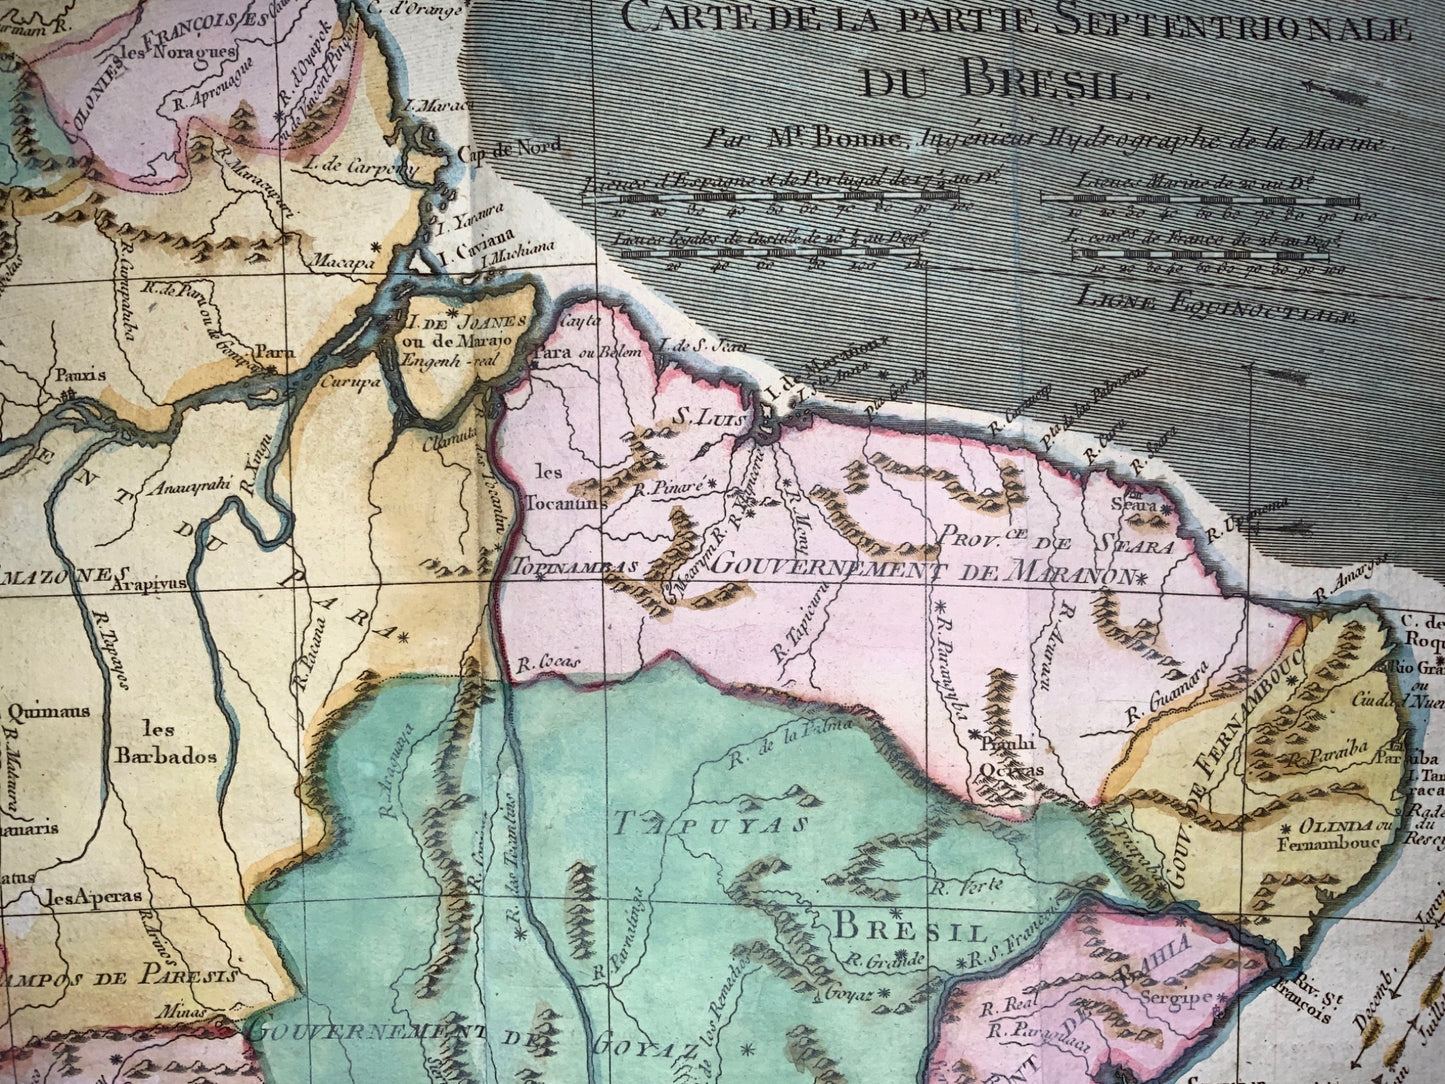 1780 Bonne - BRAZIL: Brésil et Pays des Amazones - hand coloured engraved map